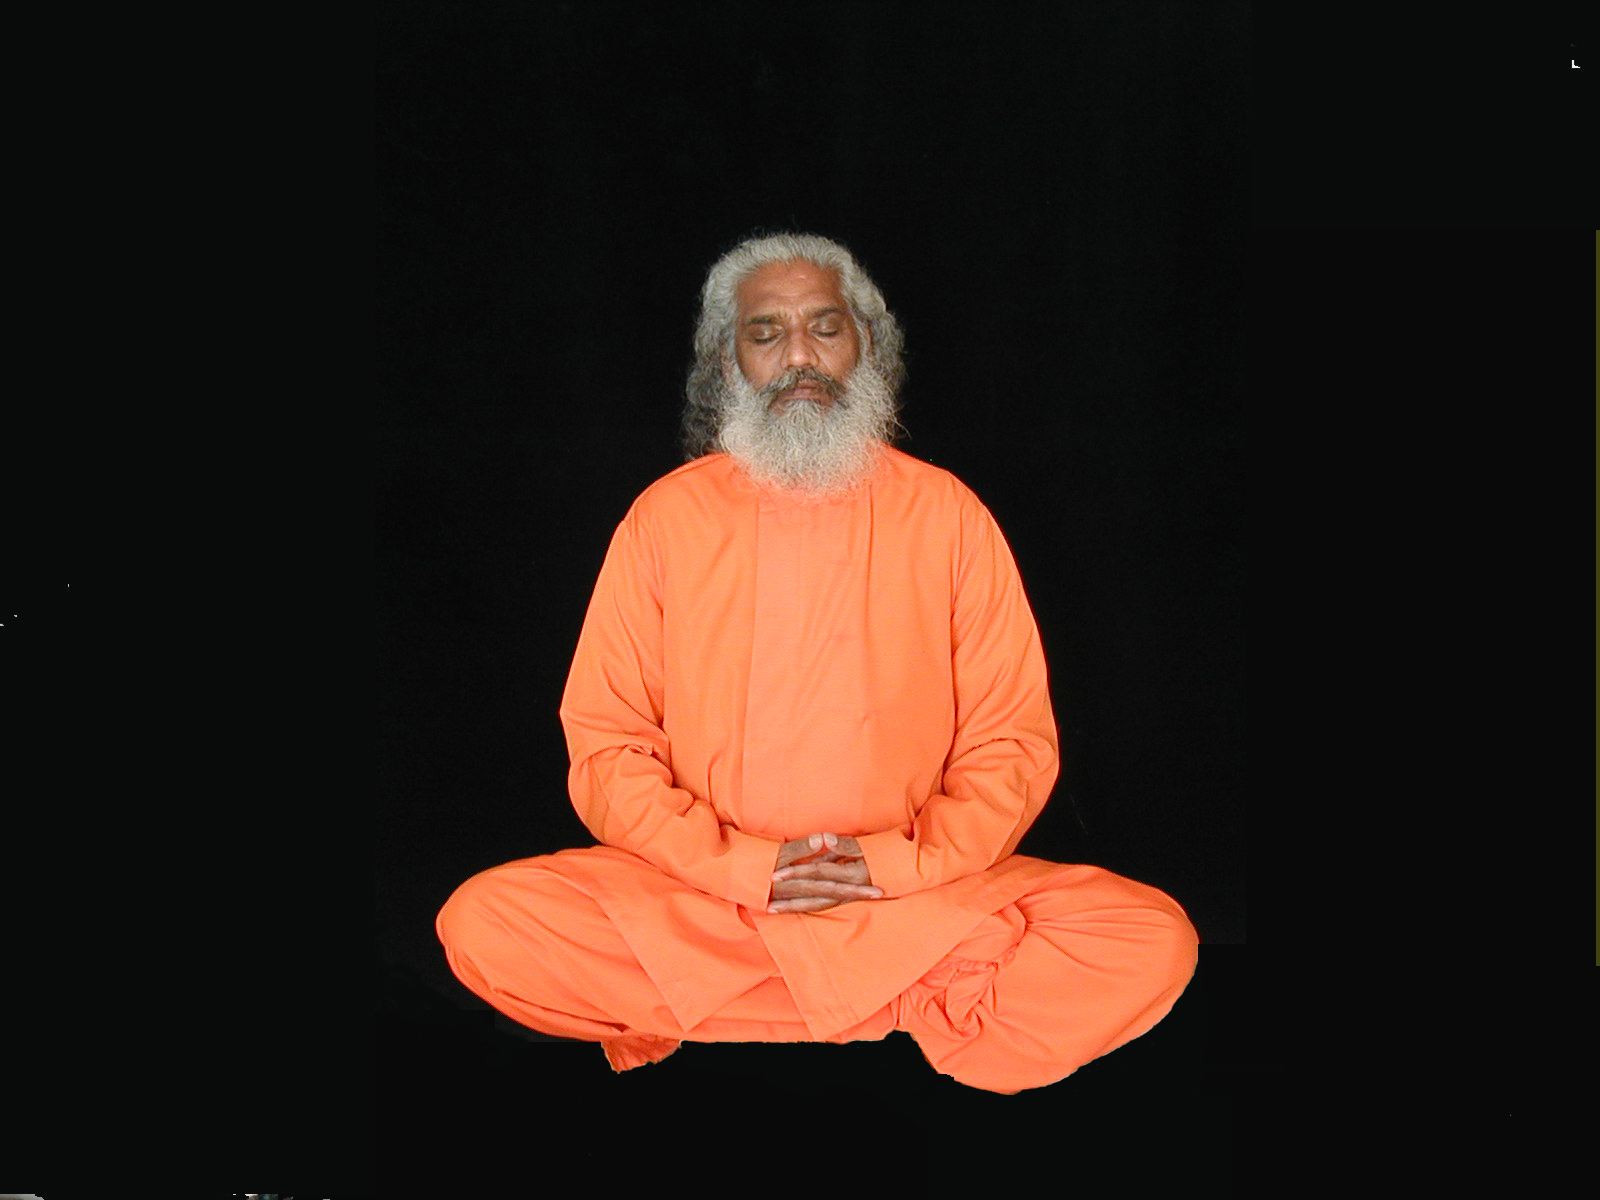 Guru meditation e3dfb2 405. Индус медитирует. Йога мудрец. Индия медитация.